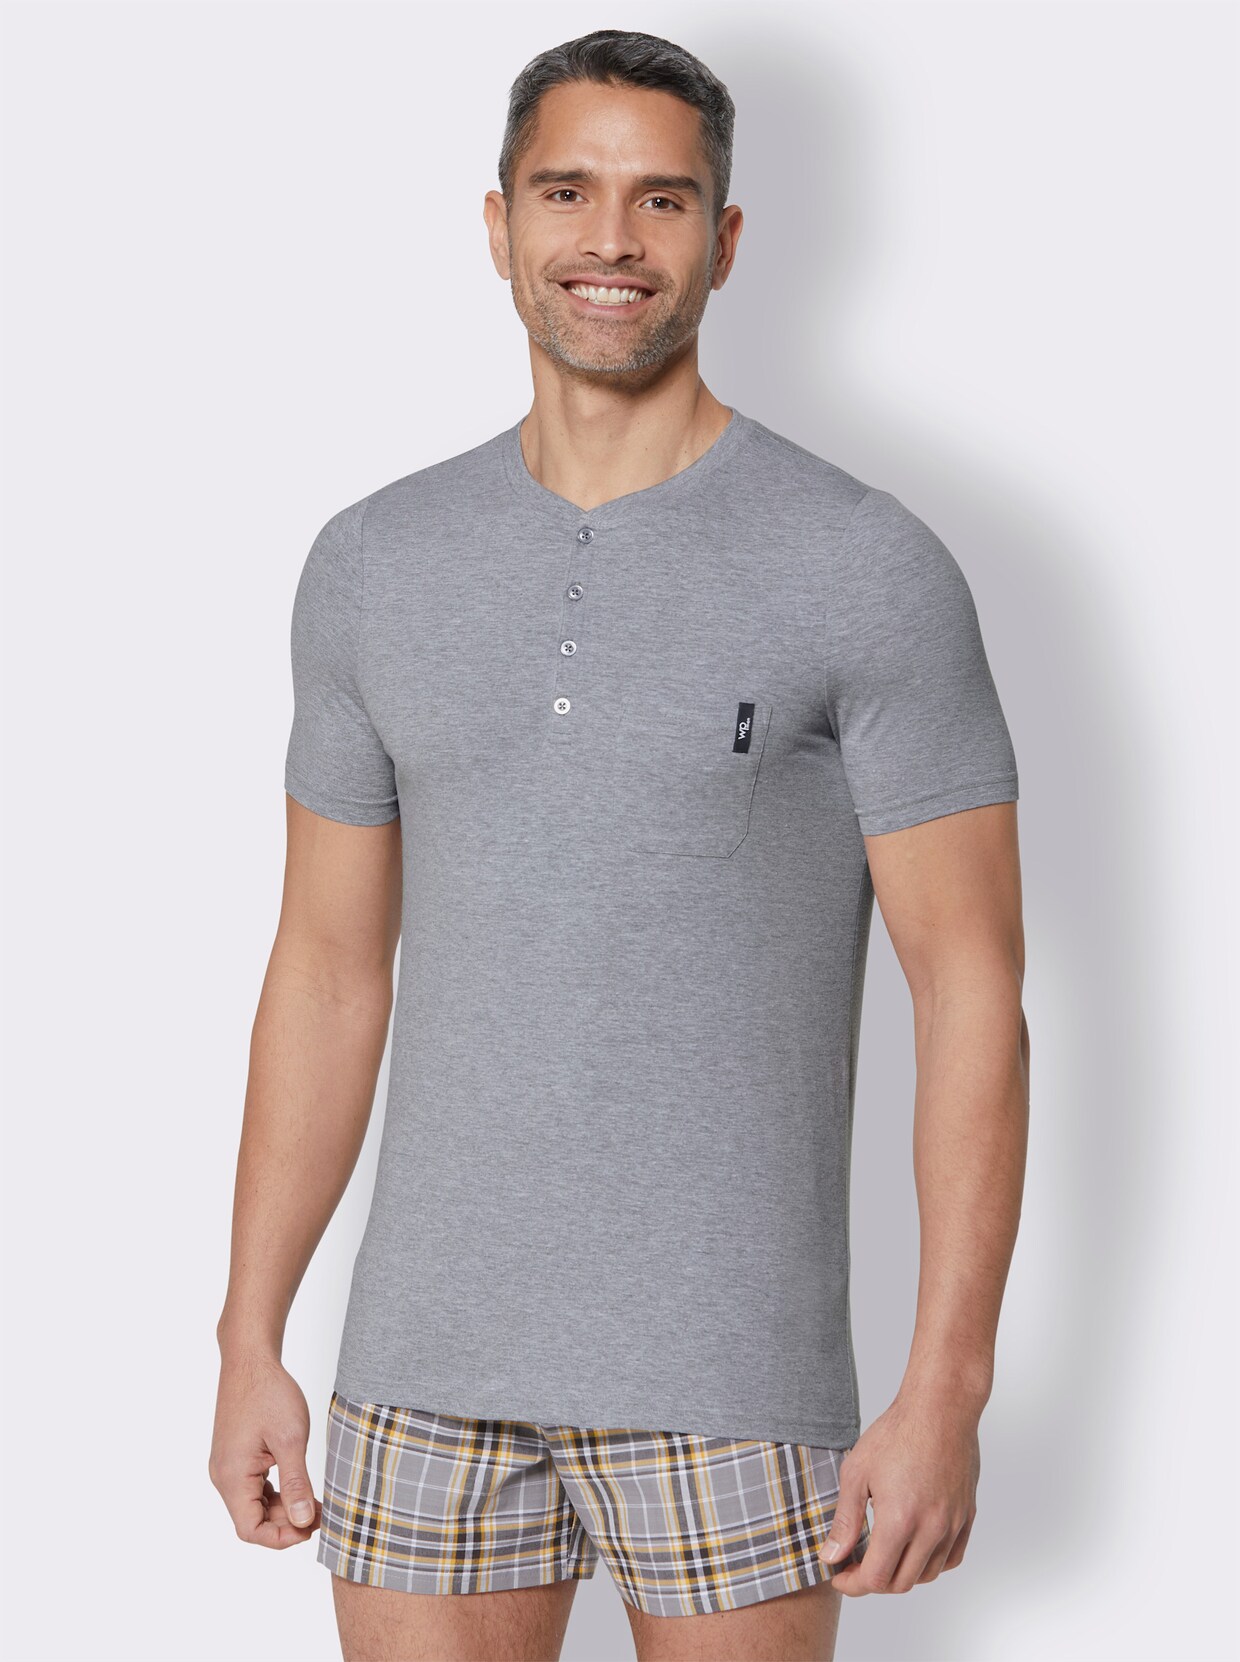 wäschepur Shirt - schwarz + grau-meliert